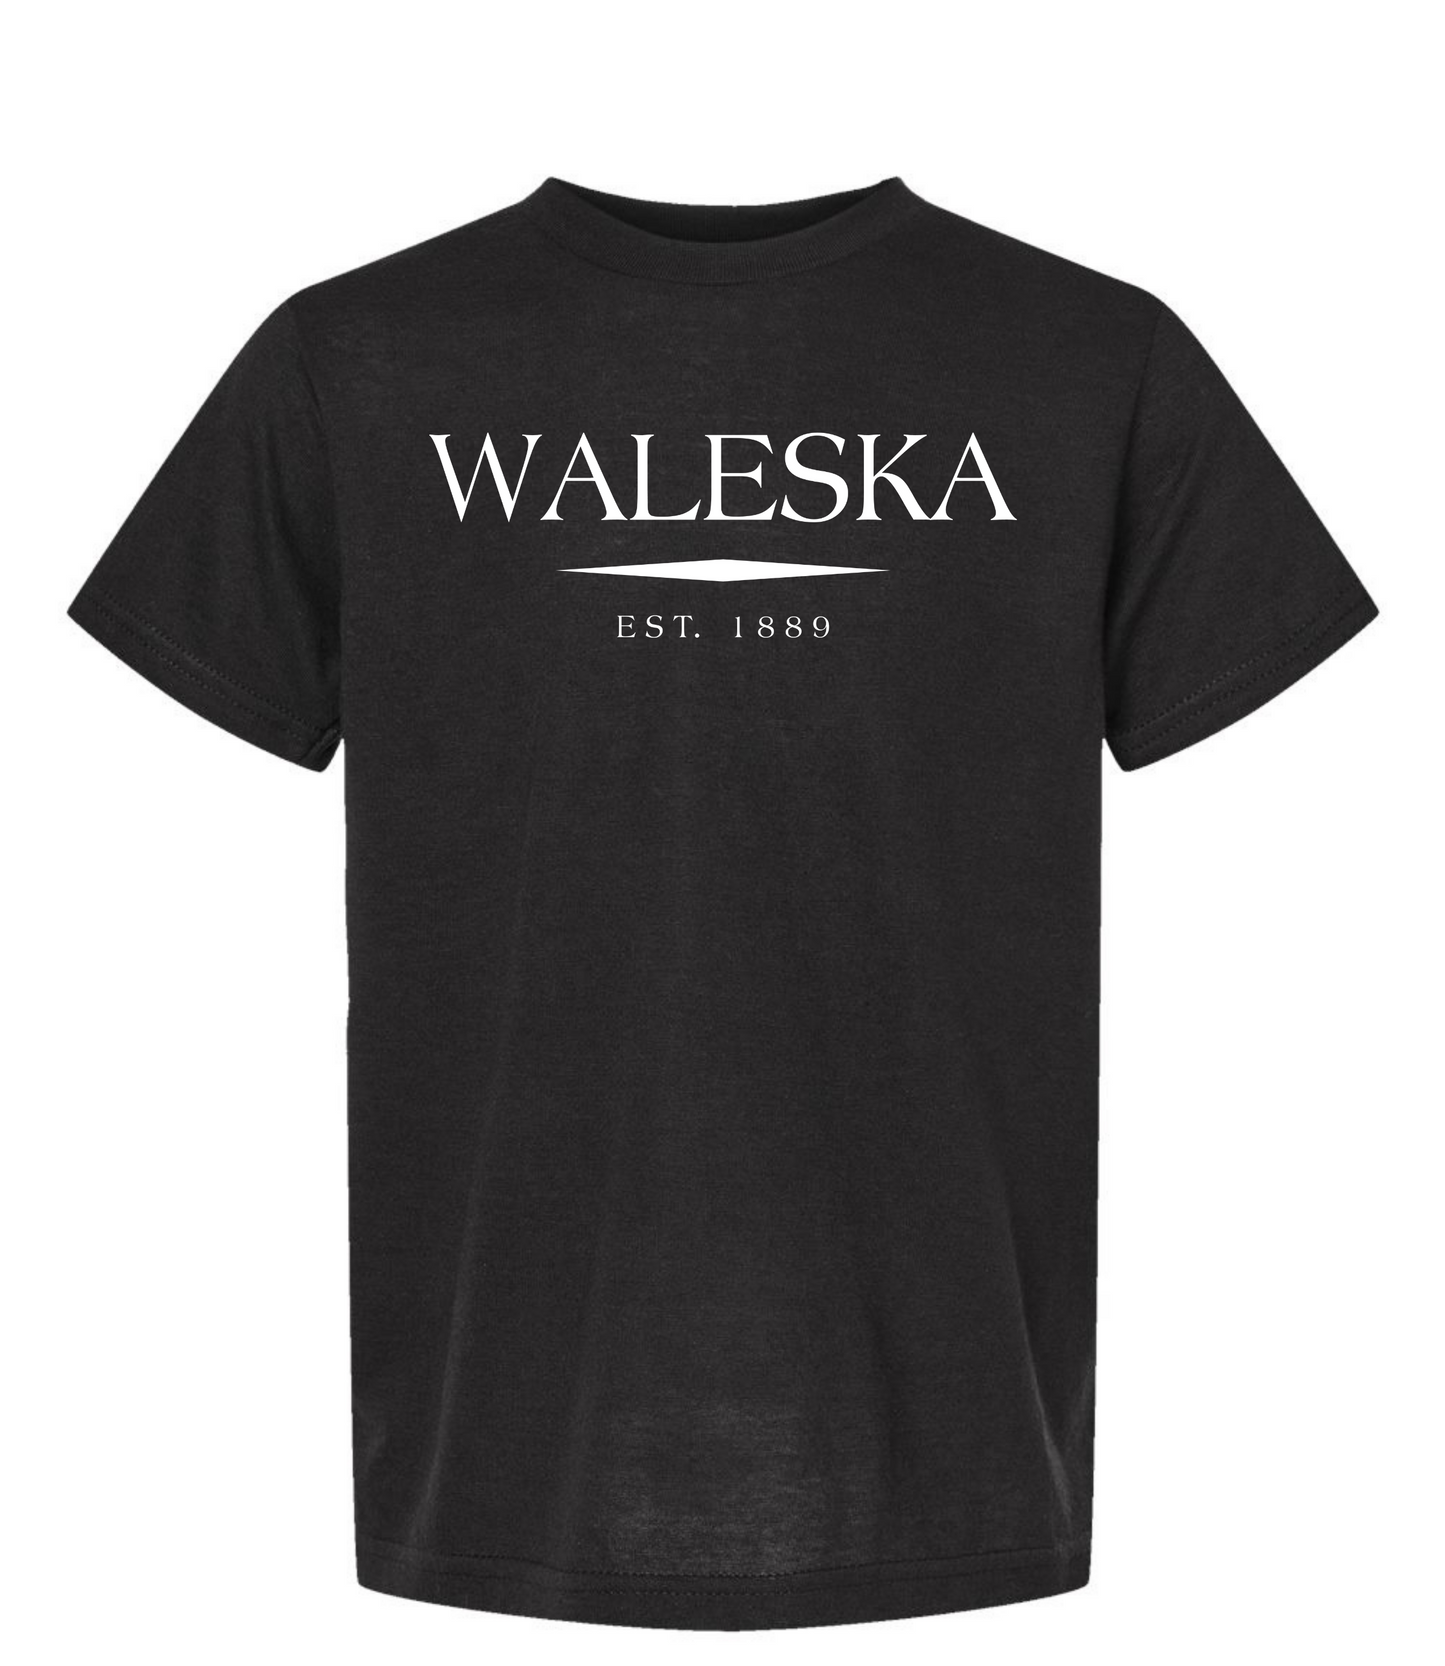 Waleska T-Shirt